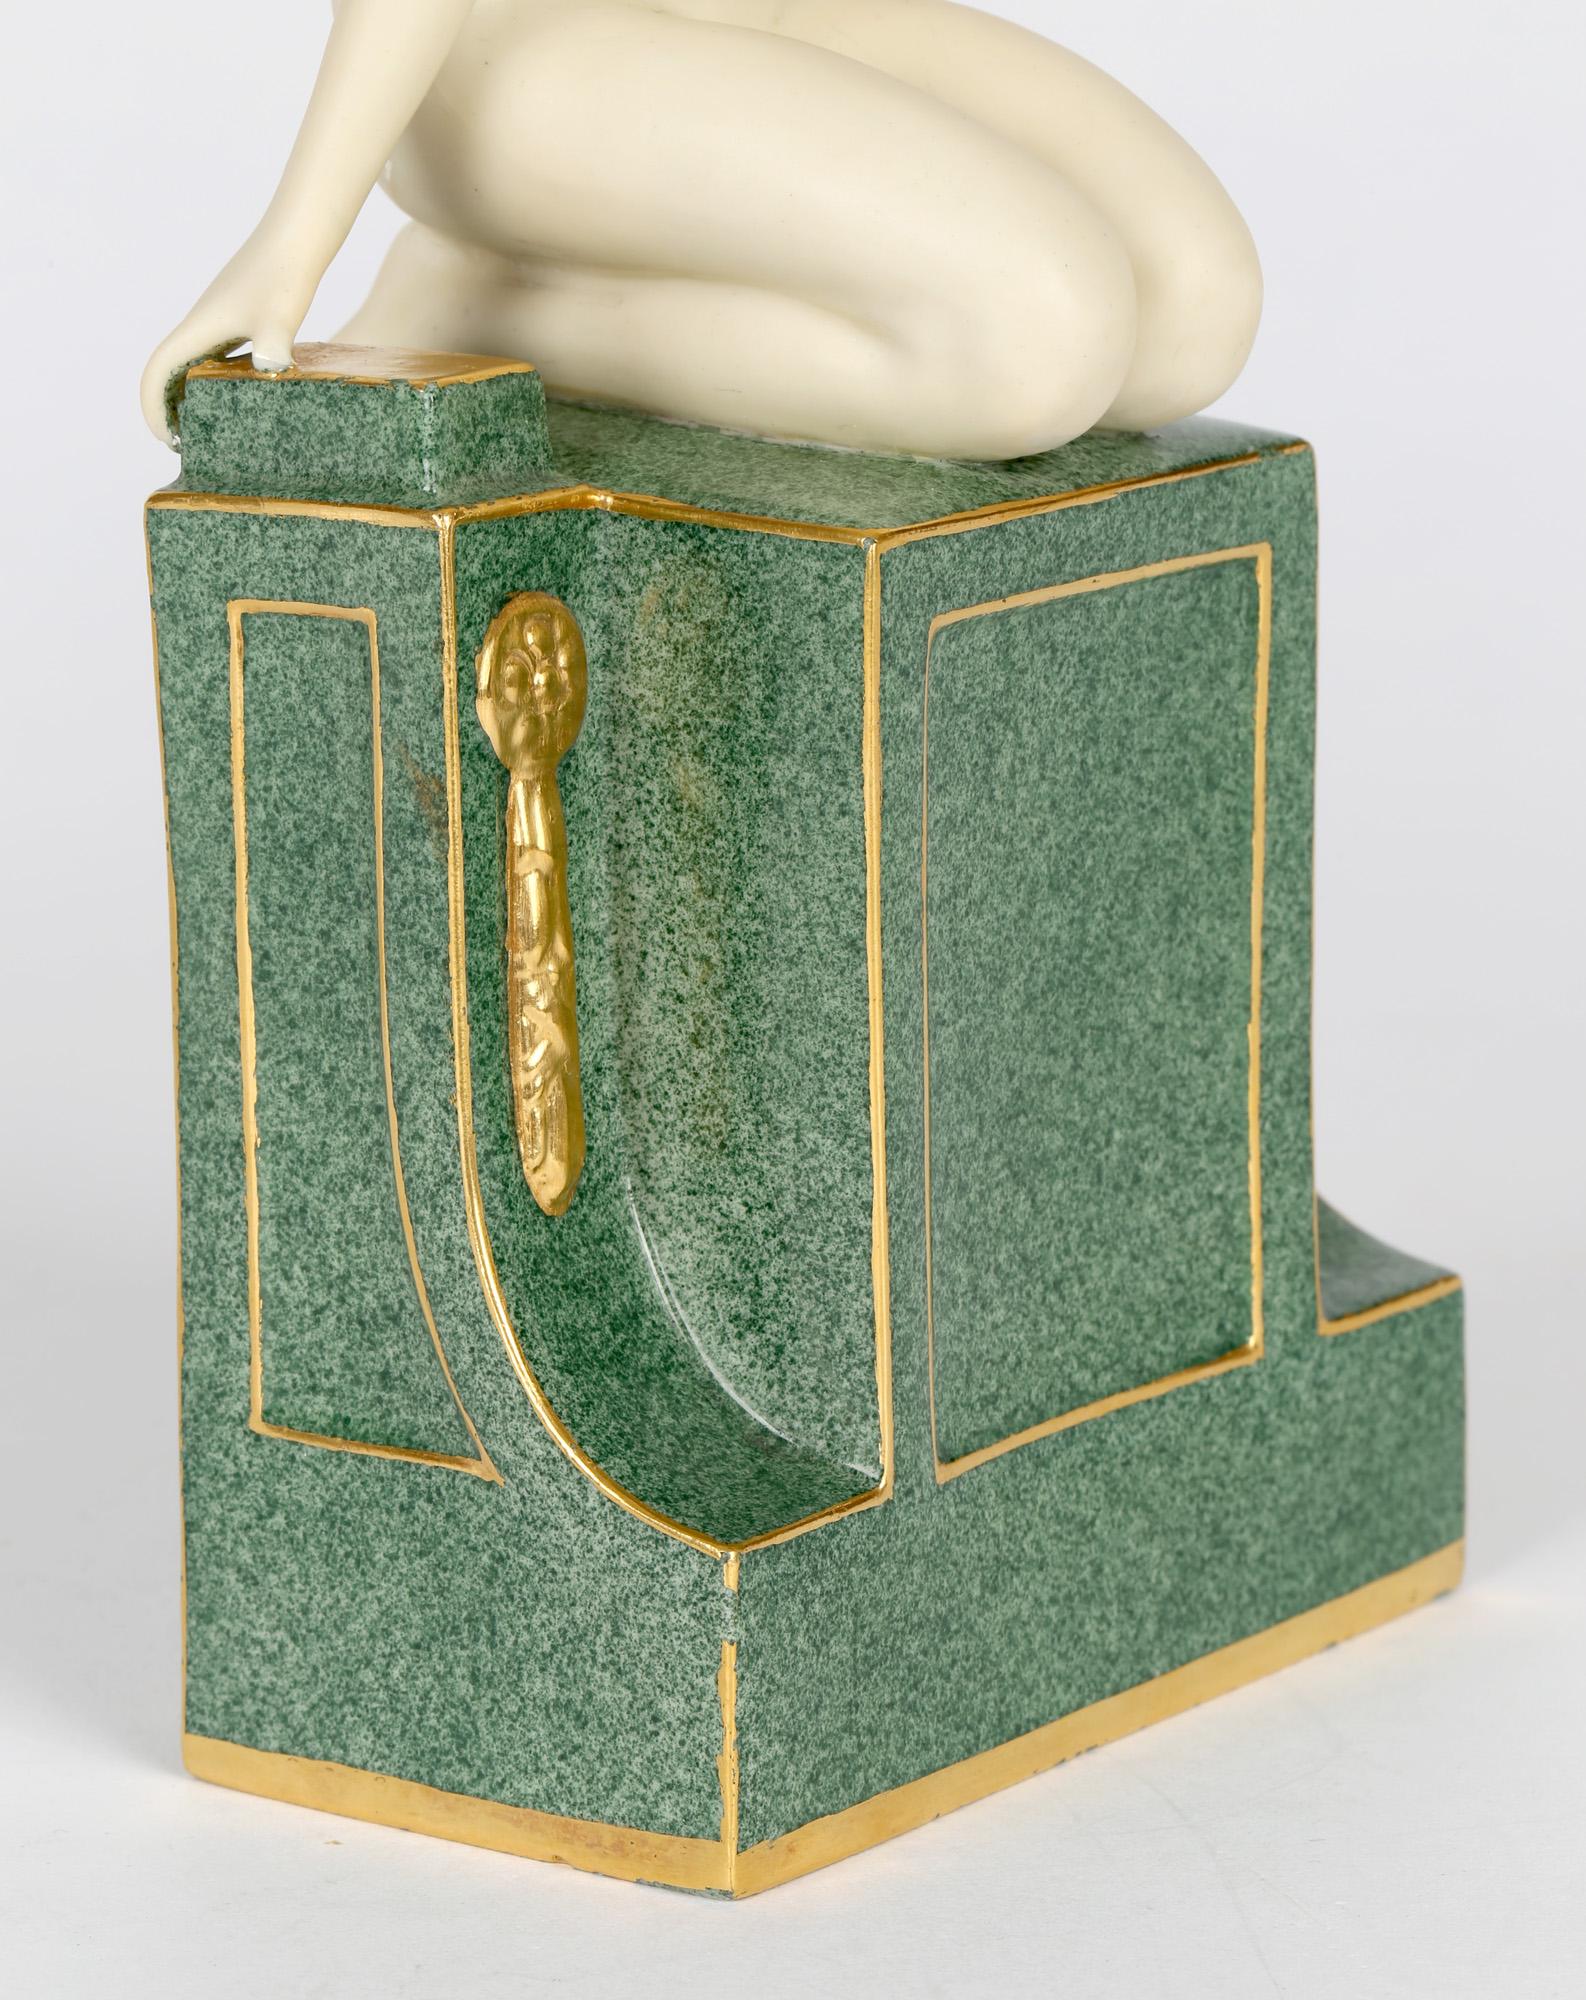 Frederick Gertner Royal Worcester Art Deco Porcelain Sculptural Naiad Figurine 6